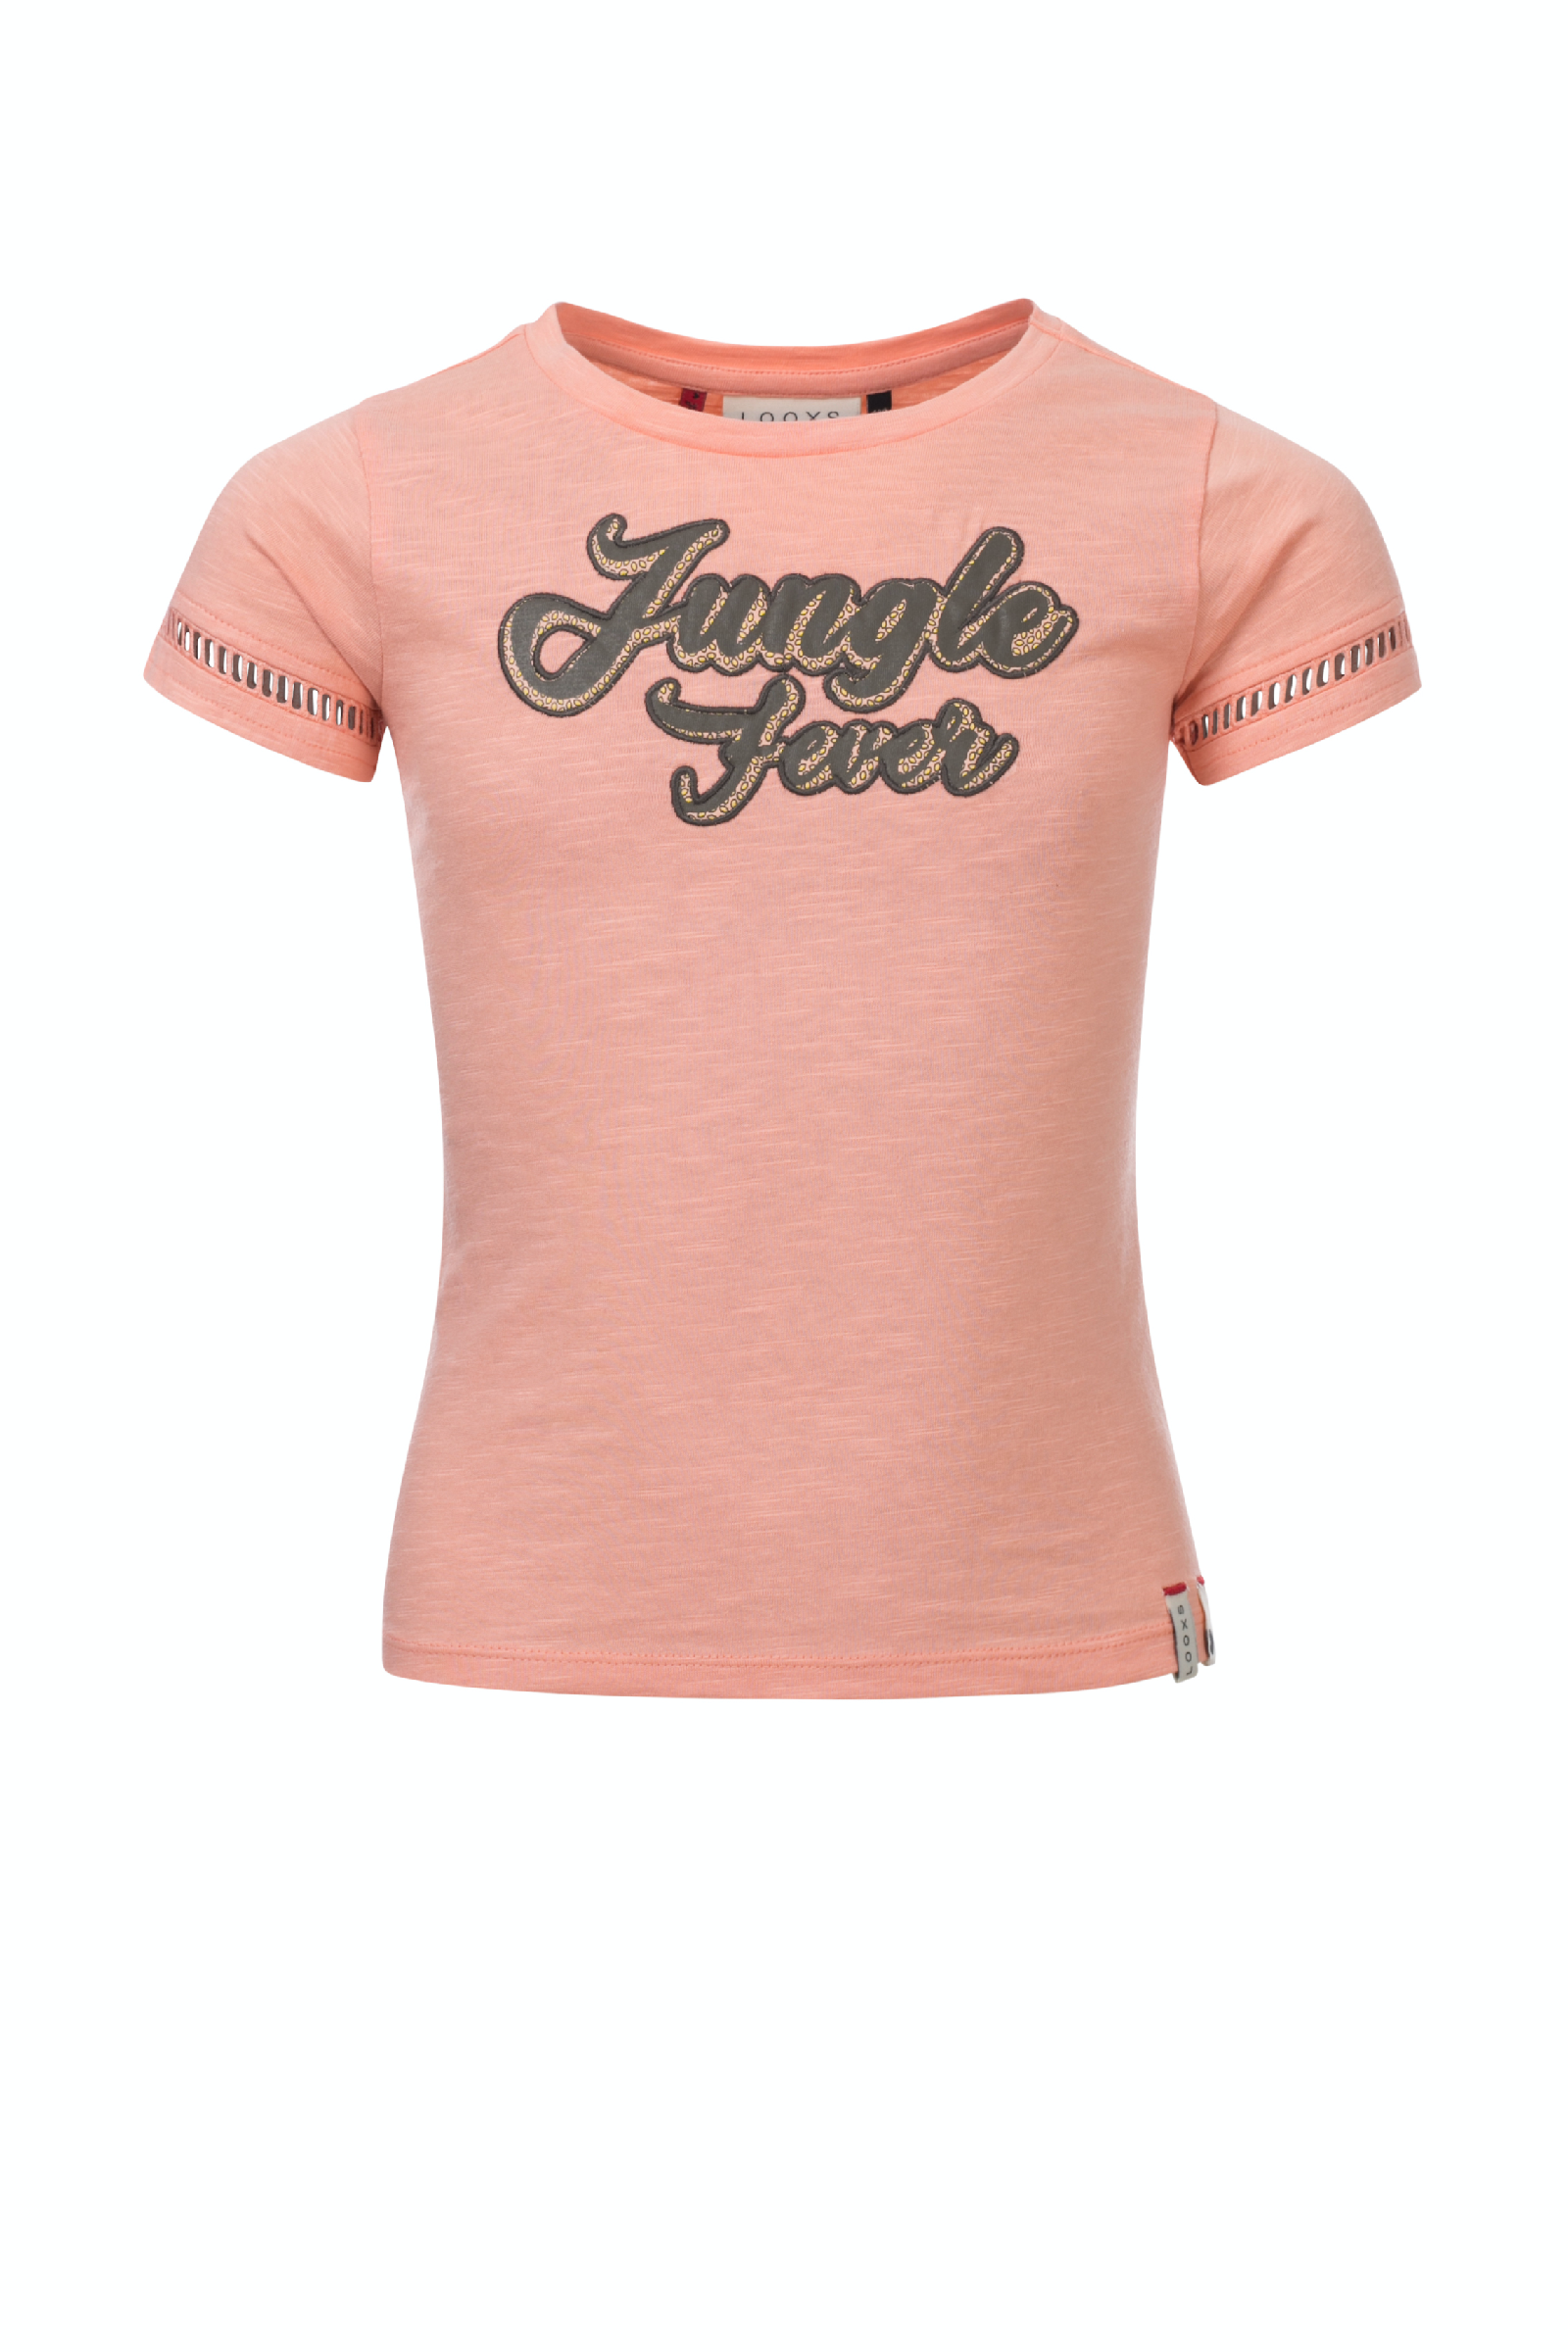 Meisjes Girls T-shirt van Looxs Revol. in de kleur Morganite in maat 164.